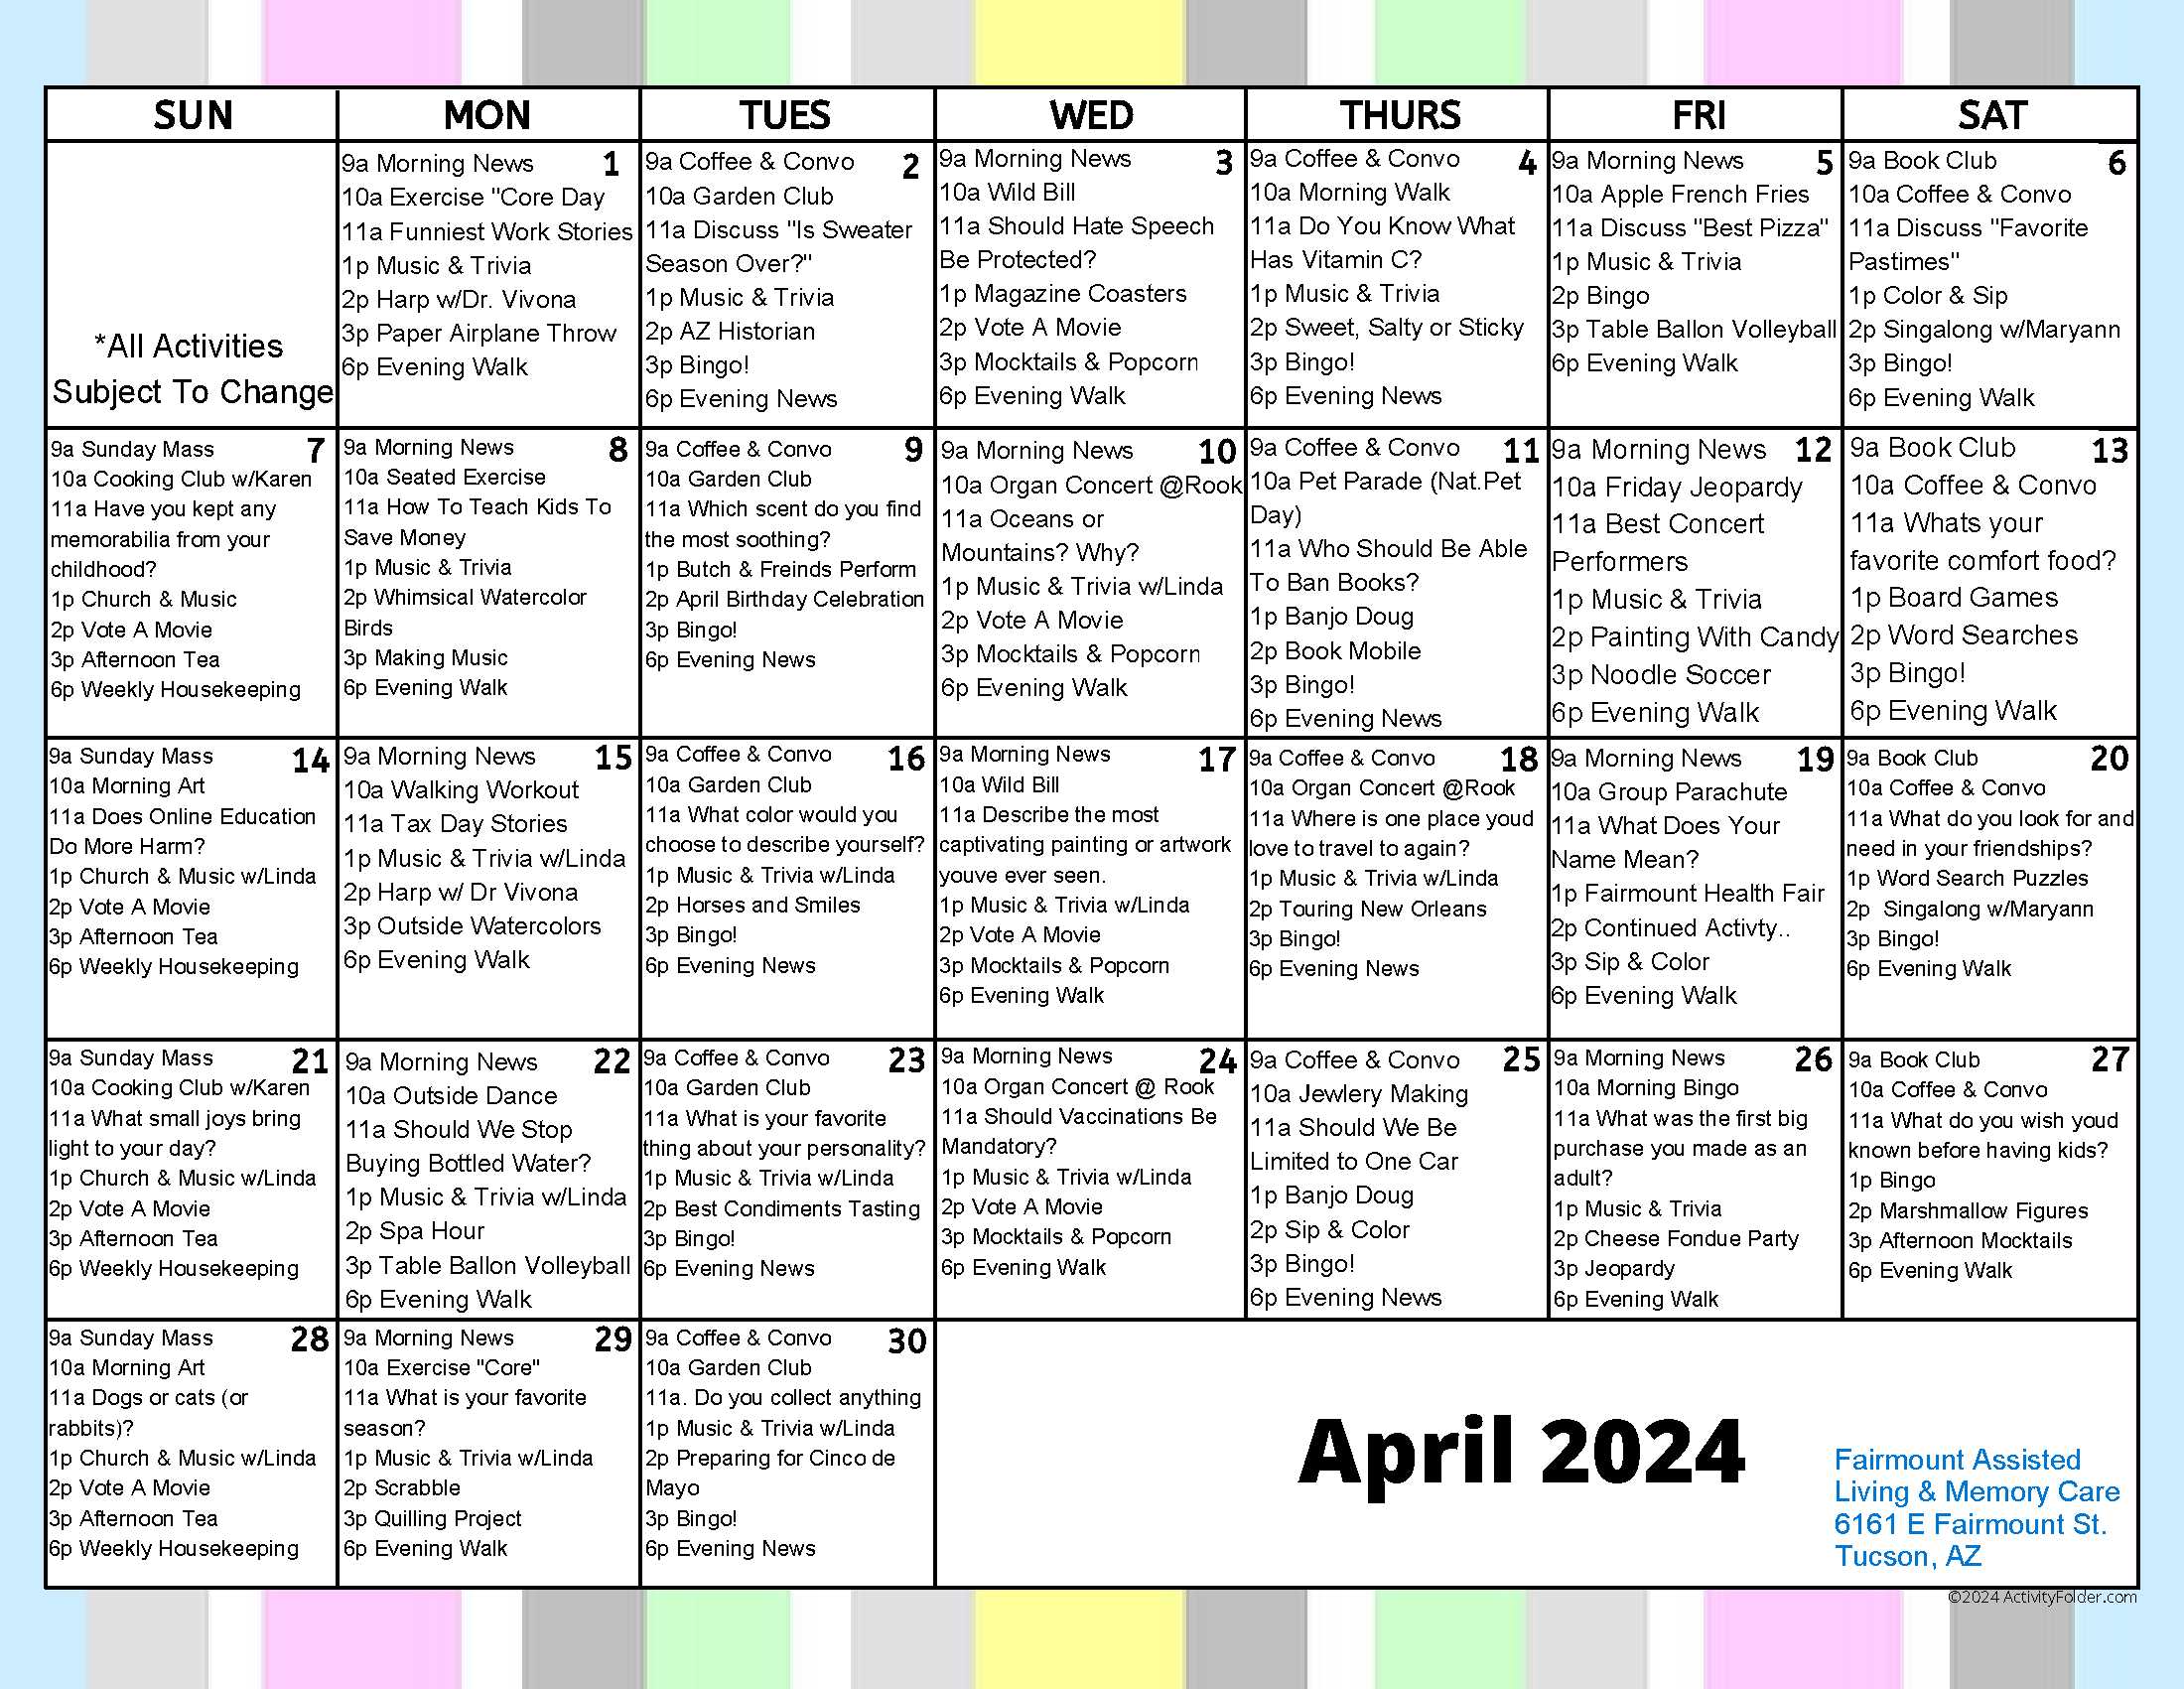 Fairmount Activities April 2024